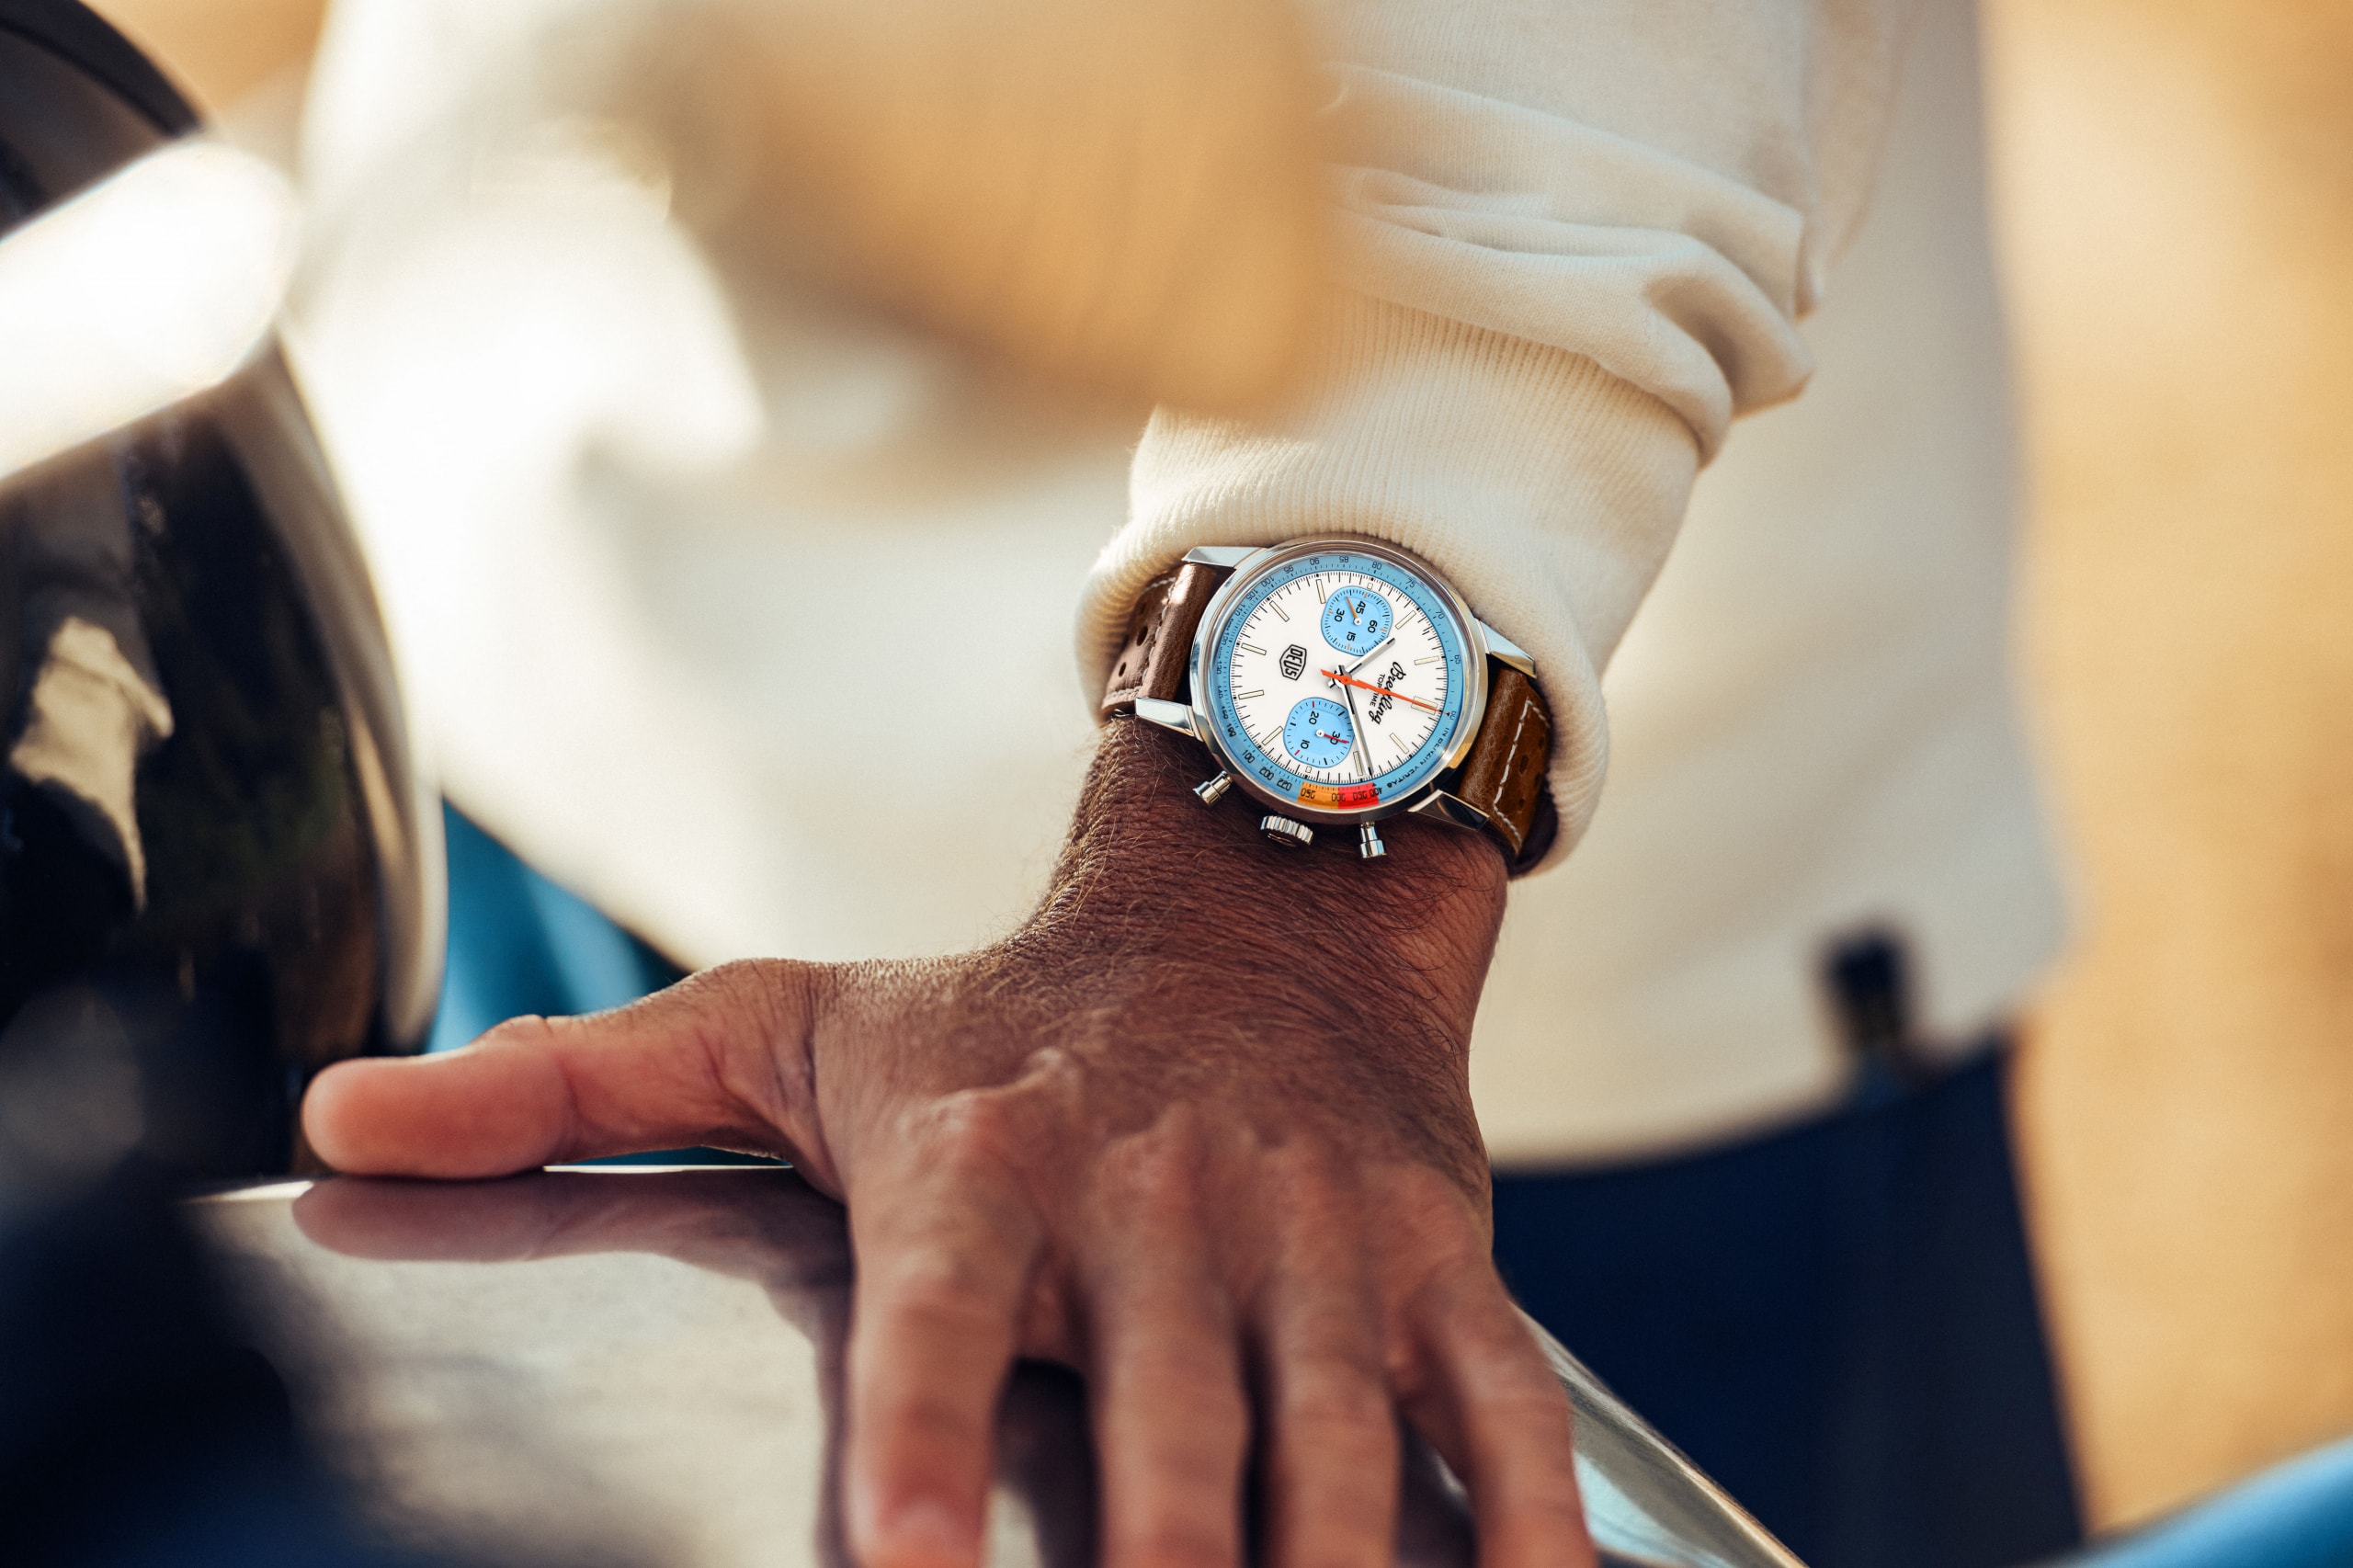 ブライトリングとデウスによるコラボレーション・ウオッチ第2弾が登場 Breitling and Deus launch second collaborative watch top time